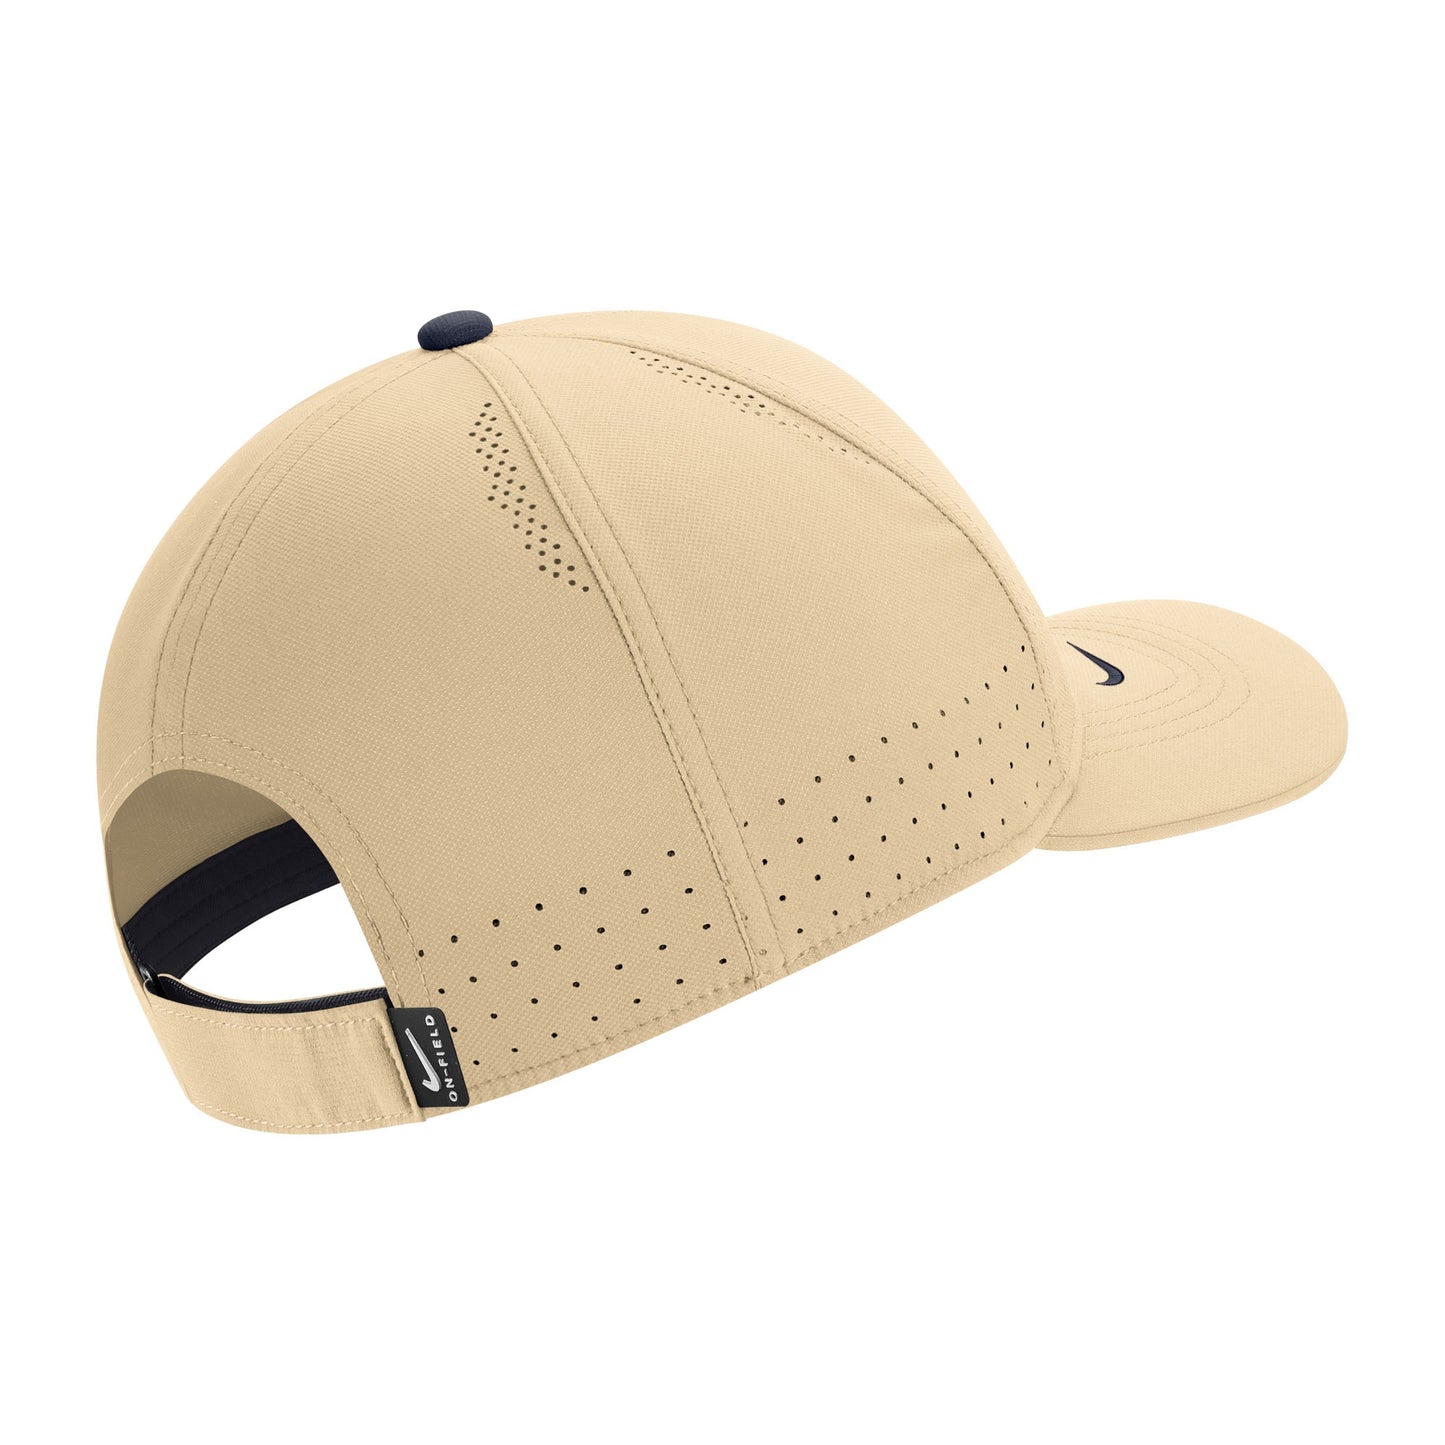 Nike Sideline L91 Gold Adjustable Cap